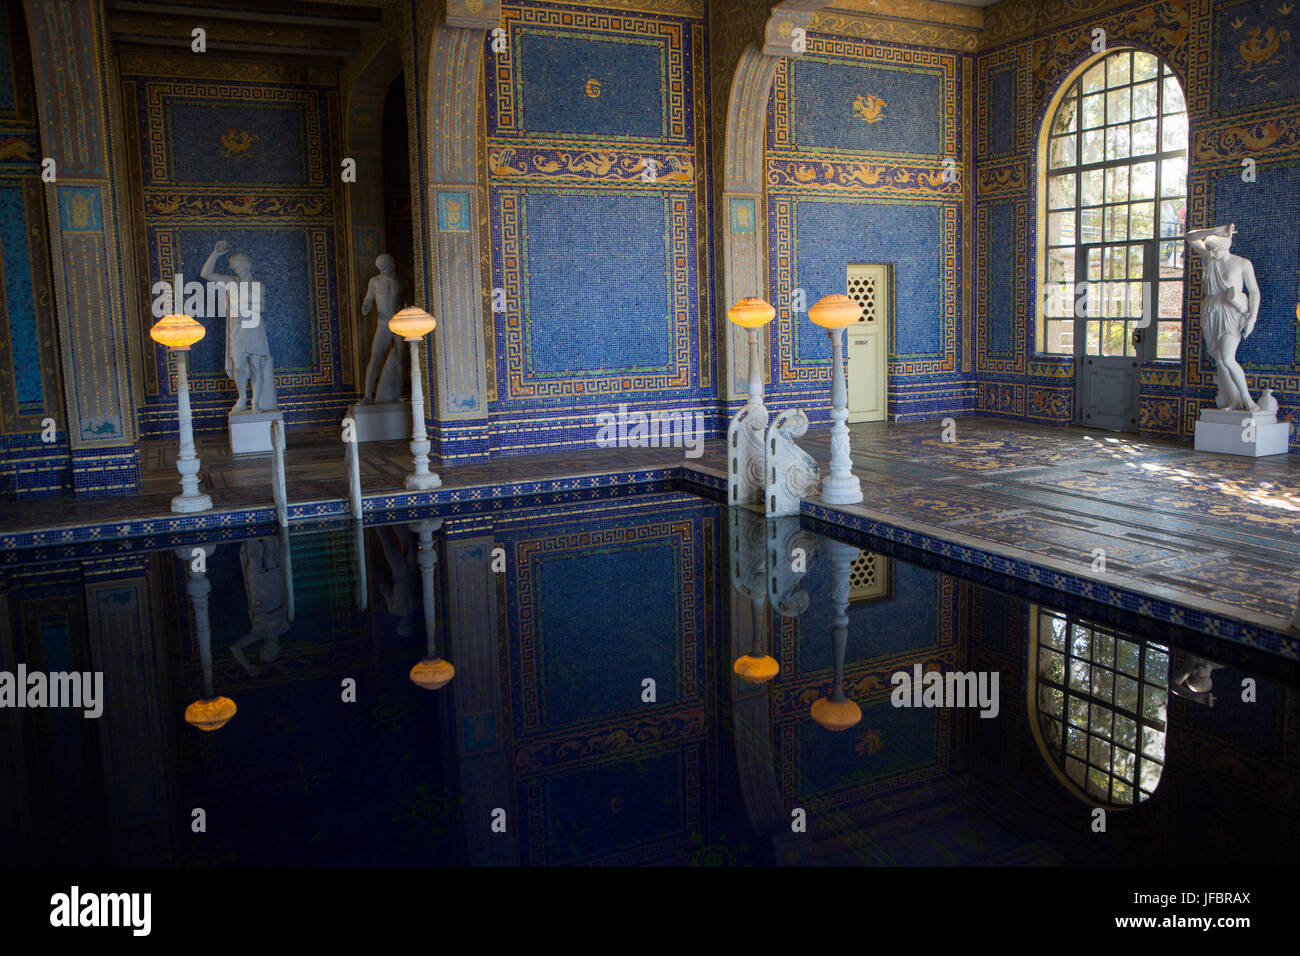 La piscina romana presso il Castello di Hearst, con stile dopo un antico bagno romano, è piastrellato con mosaico pattern in blu e oro, illuminata con illuminazione ornati e circondato da sculture. Foto Stock